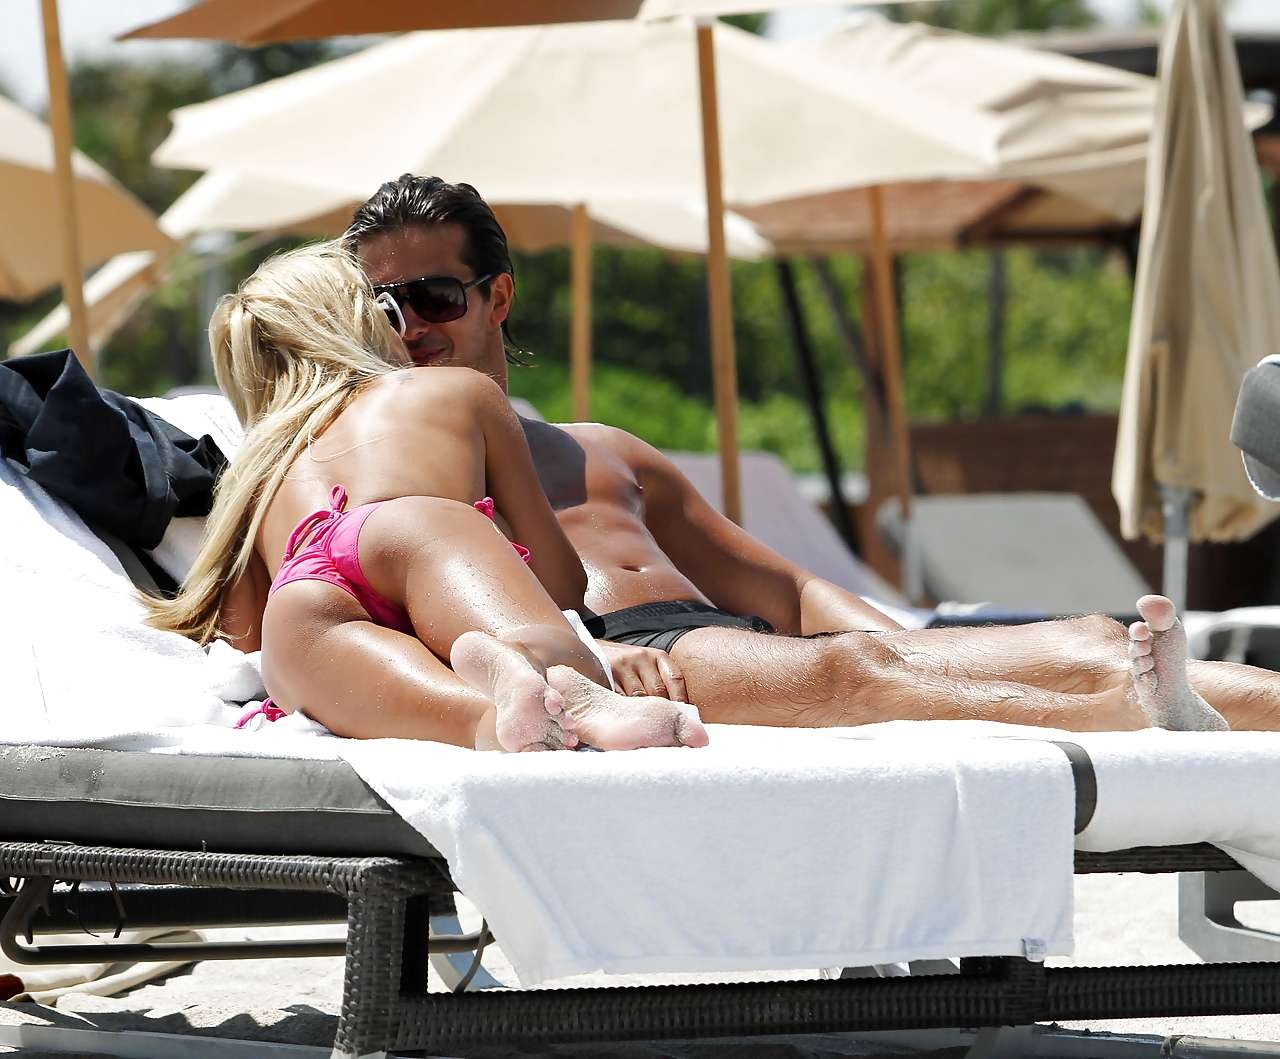 Shauna sand s'amuse avec son petit ami en bikini rose sur la plage, prise par les paparazzis.
 #75296127